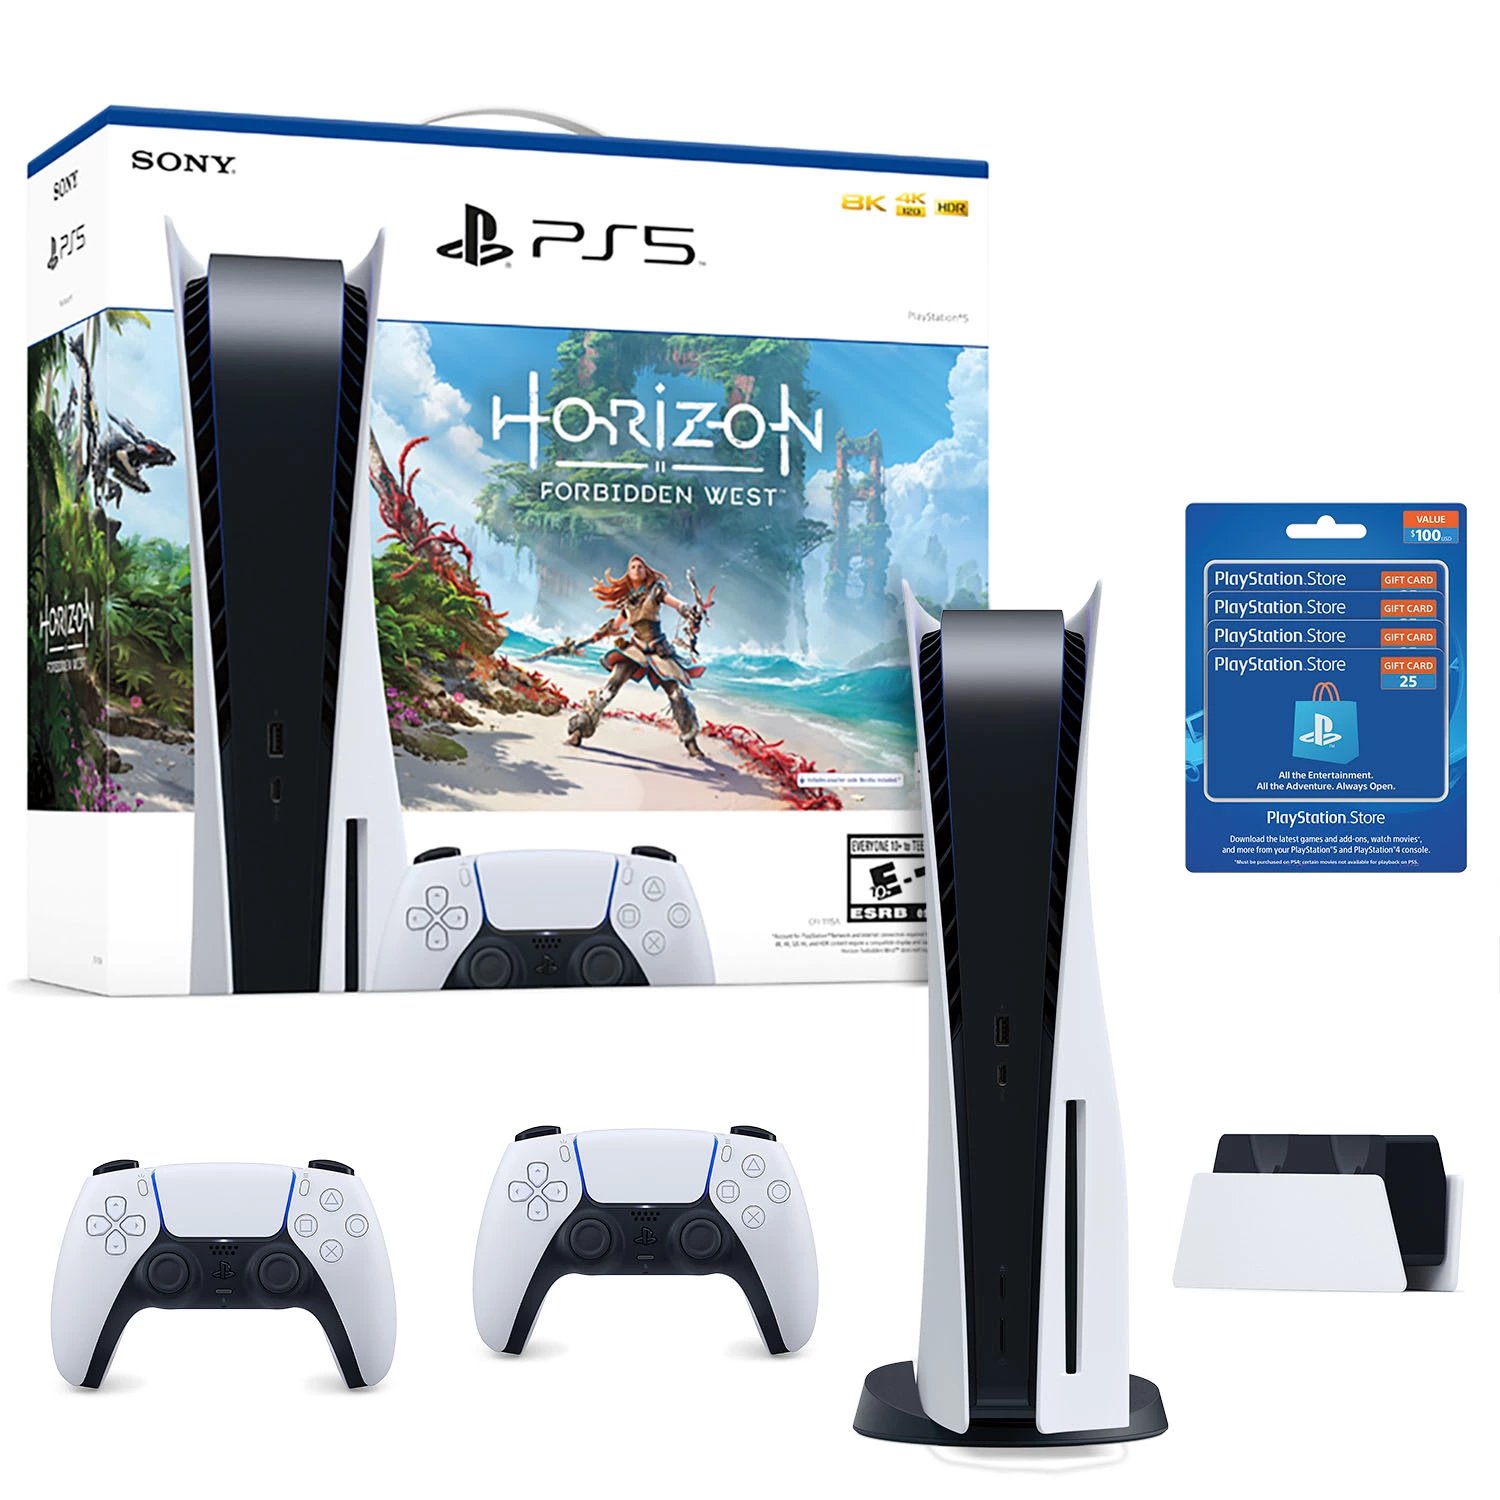 Uji Coba Visual PlayStation atau PS 5 Dengan Resolusi 1440p, Puaskan Pemainnya